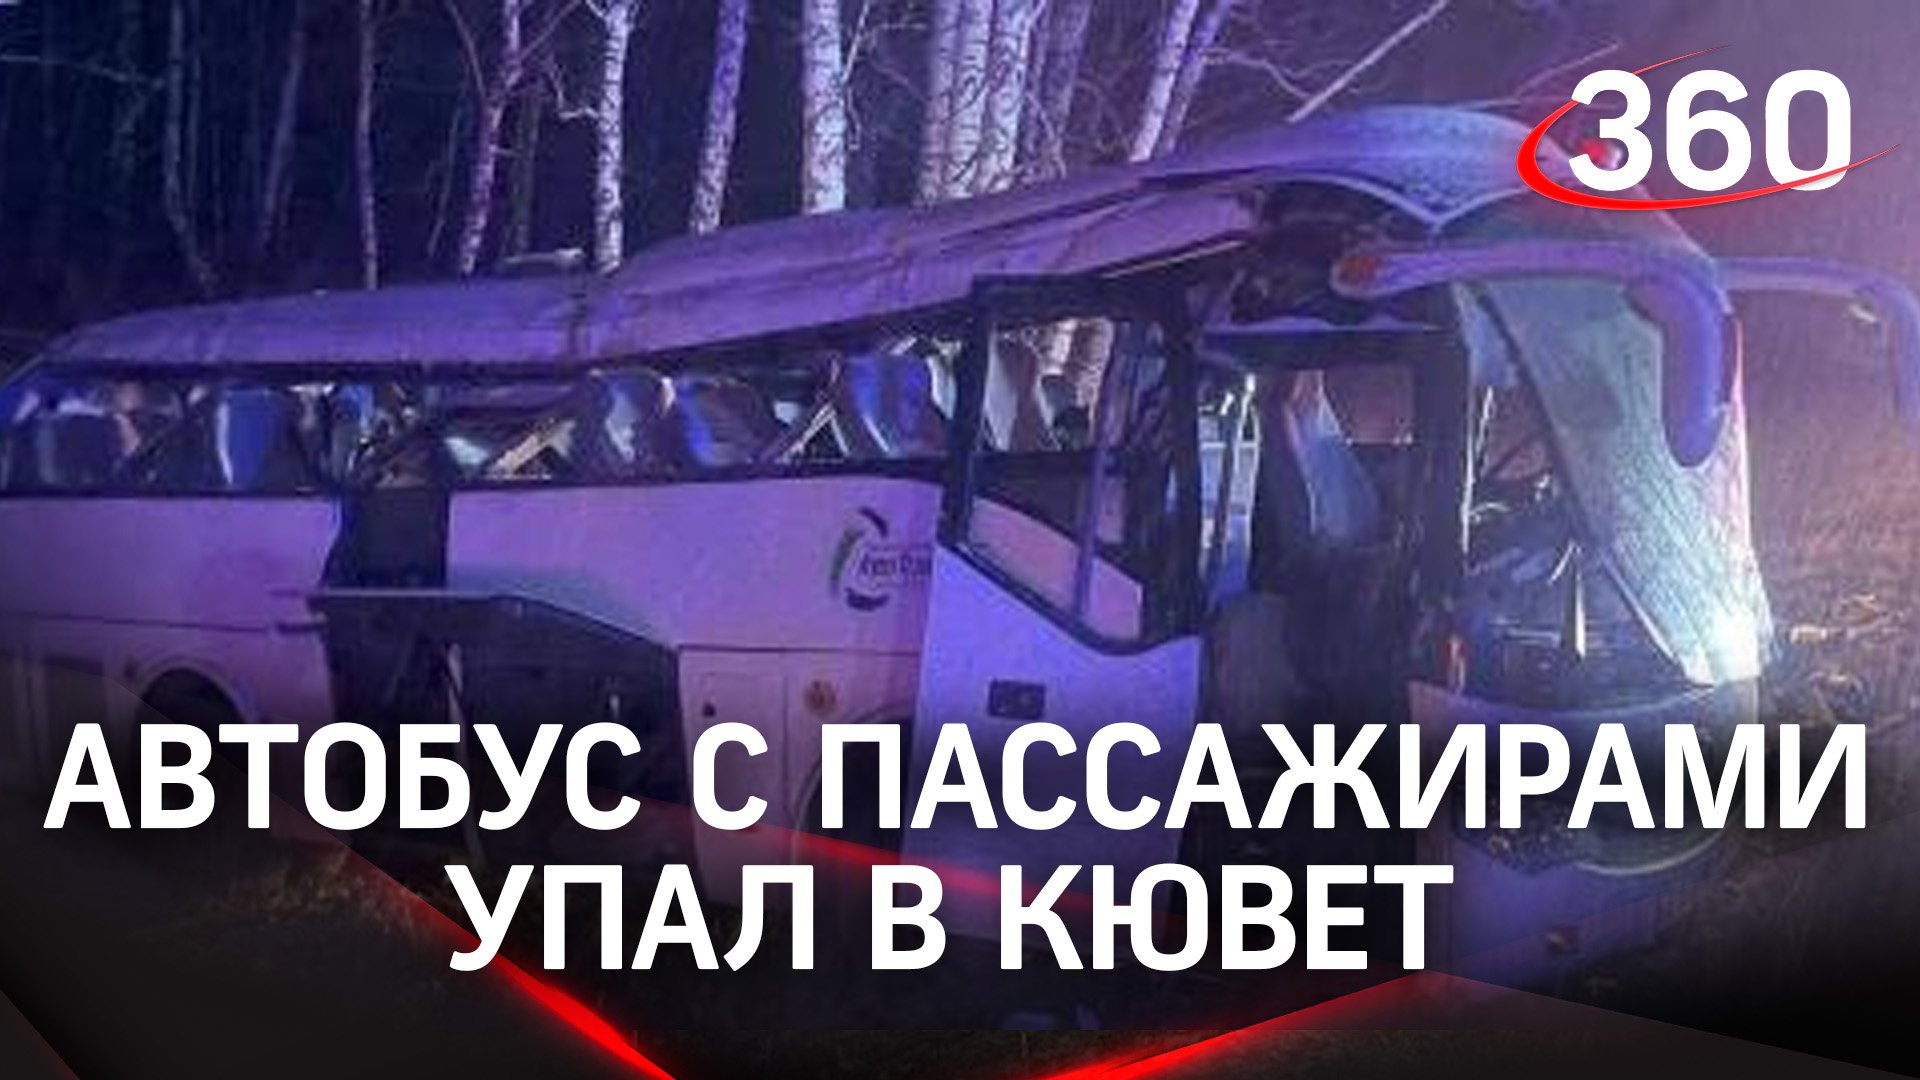 Скользкая дорога: автобус опрокинулся в кювет под Челябинском, есть пострадавшие